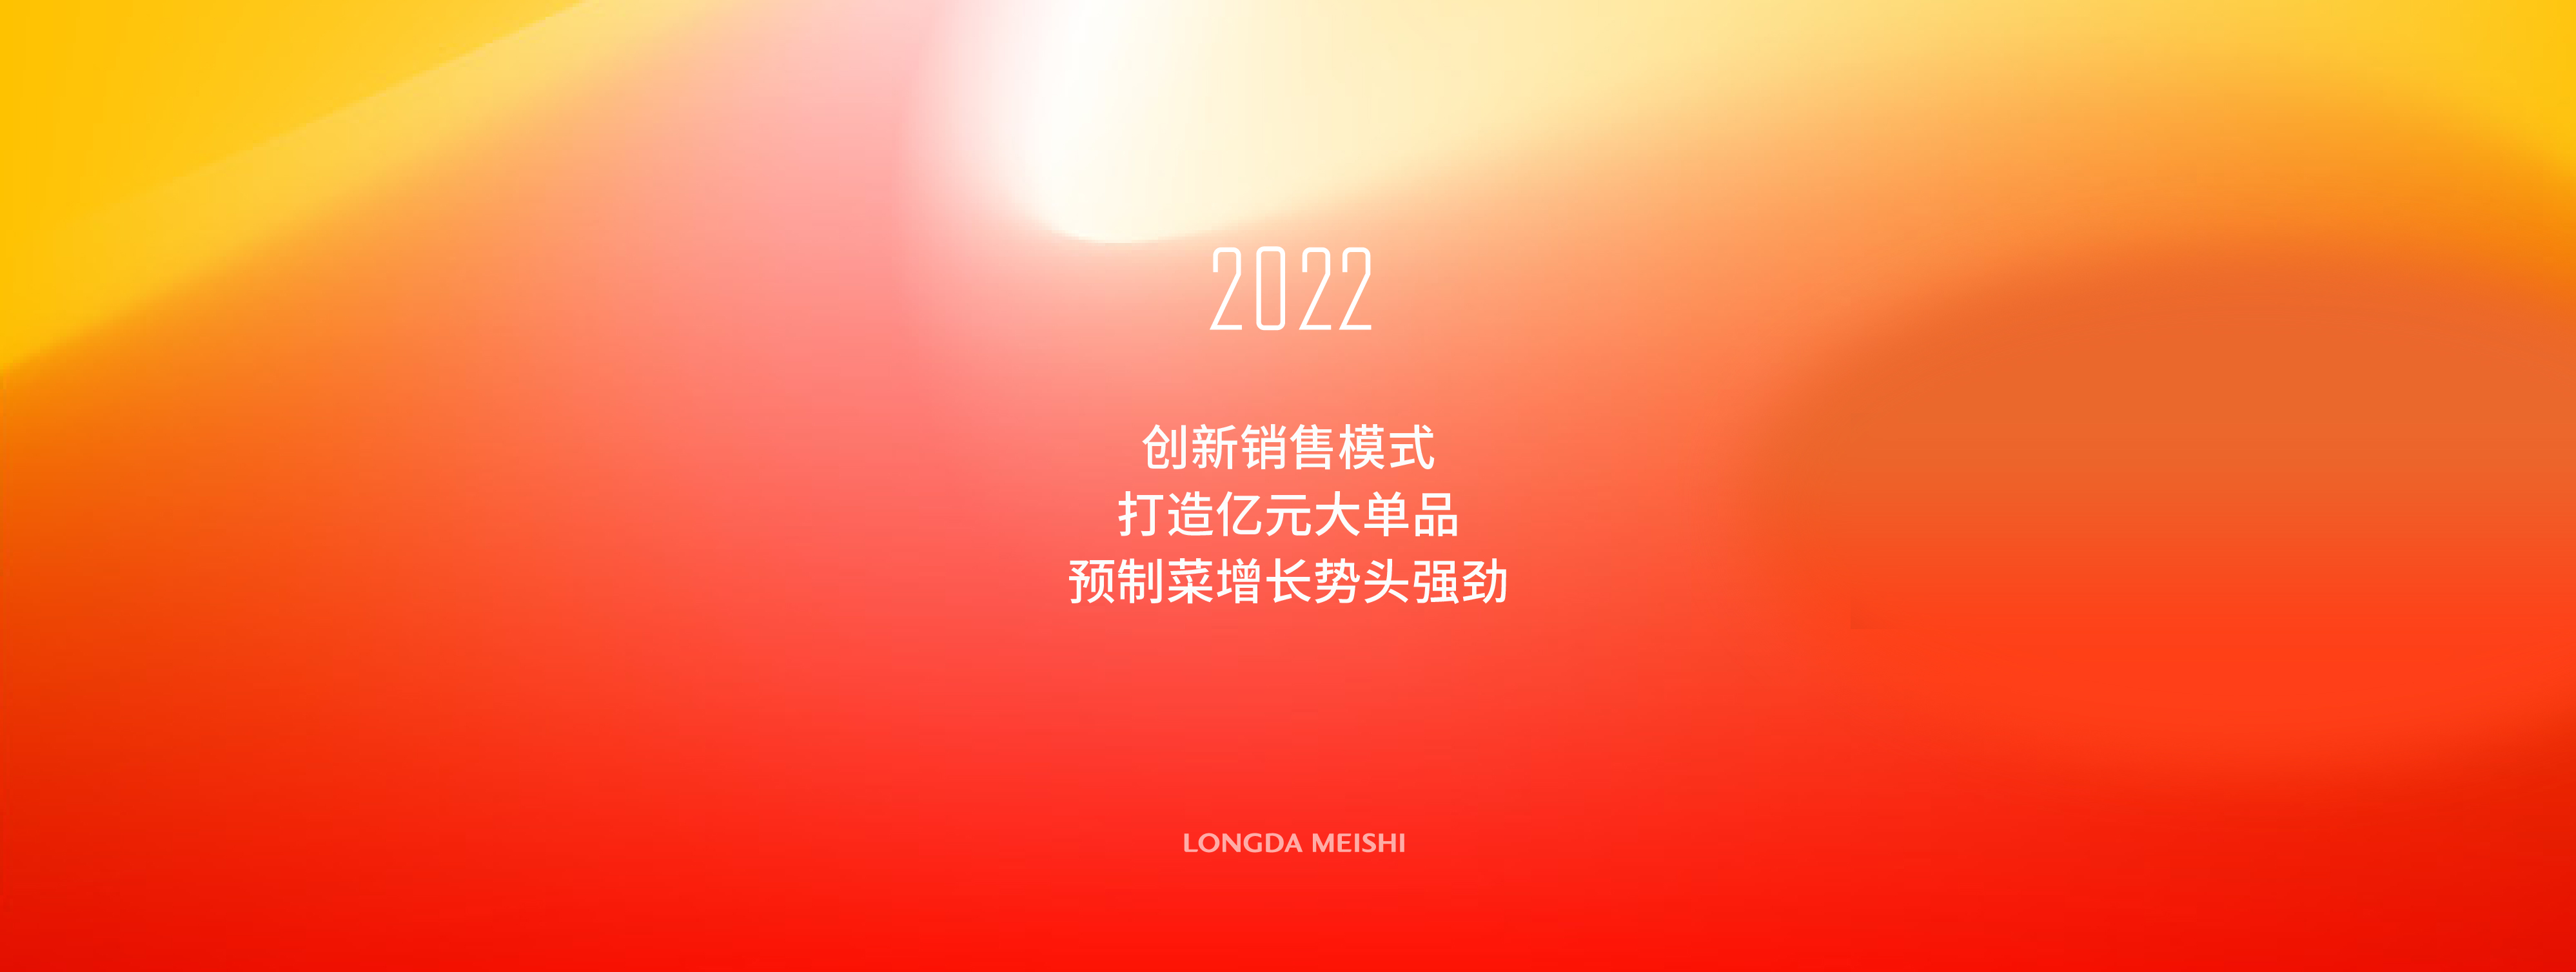 龍(long)大美食的2022︰創新銷售(shou)模式、打造億元大單品、預制菜增(zeng)長勢頭強勁(jing)